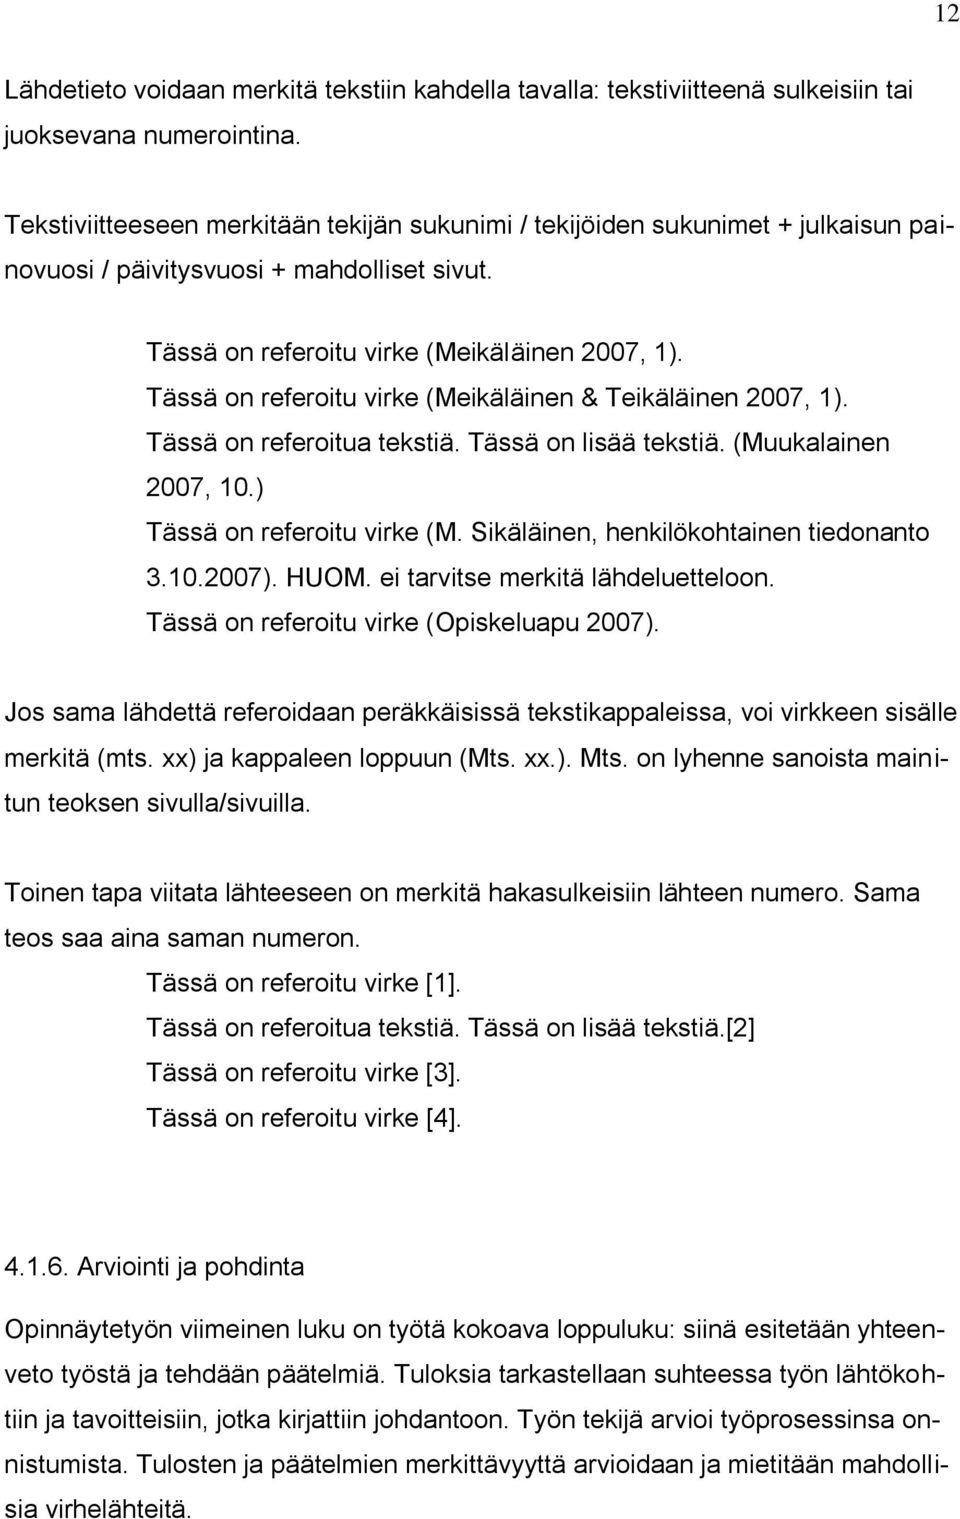 Tässä on referoitu virke (Meikäläinen & Teikäläinen 2007, 1). Tässä on referoitua tekstiä. Tässä on lisää tekstiä. (Muukalainen 2007, 10.) Tässä on referoitu virke (M.